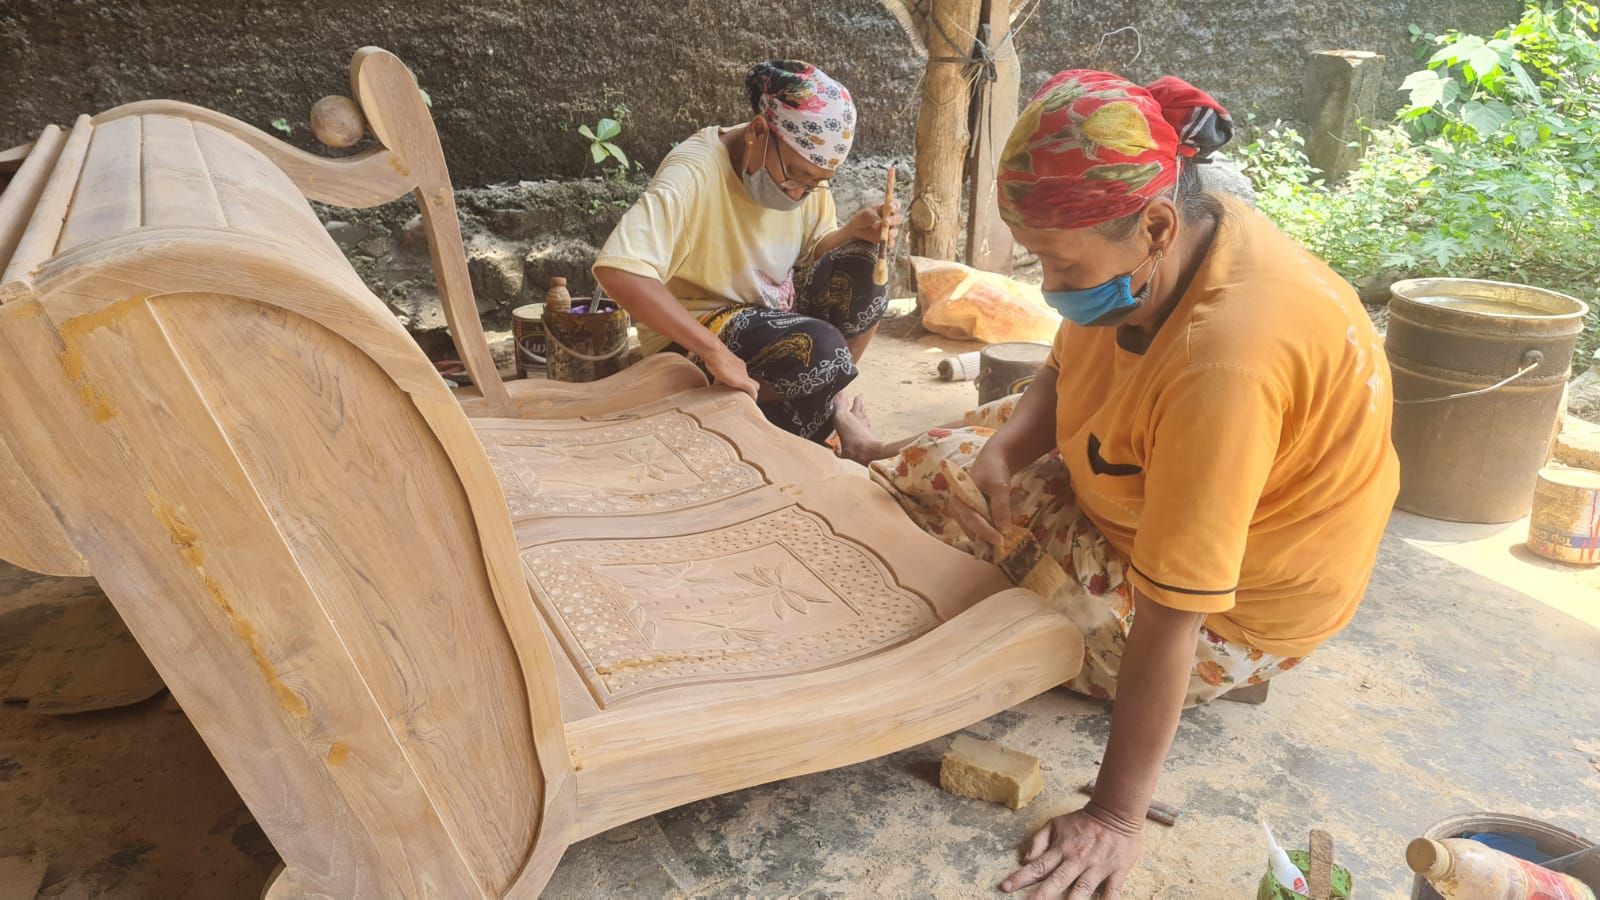 Lapak Ganjar bantu promosi usaha furniture di Desa Kuwasen RT 4 RW 1, Jepara, Jawa Tengah.